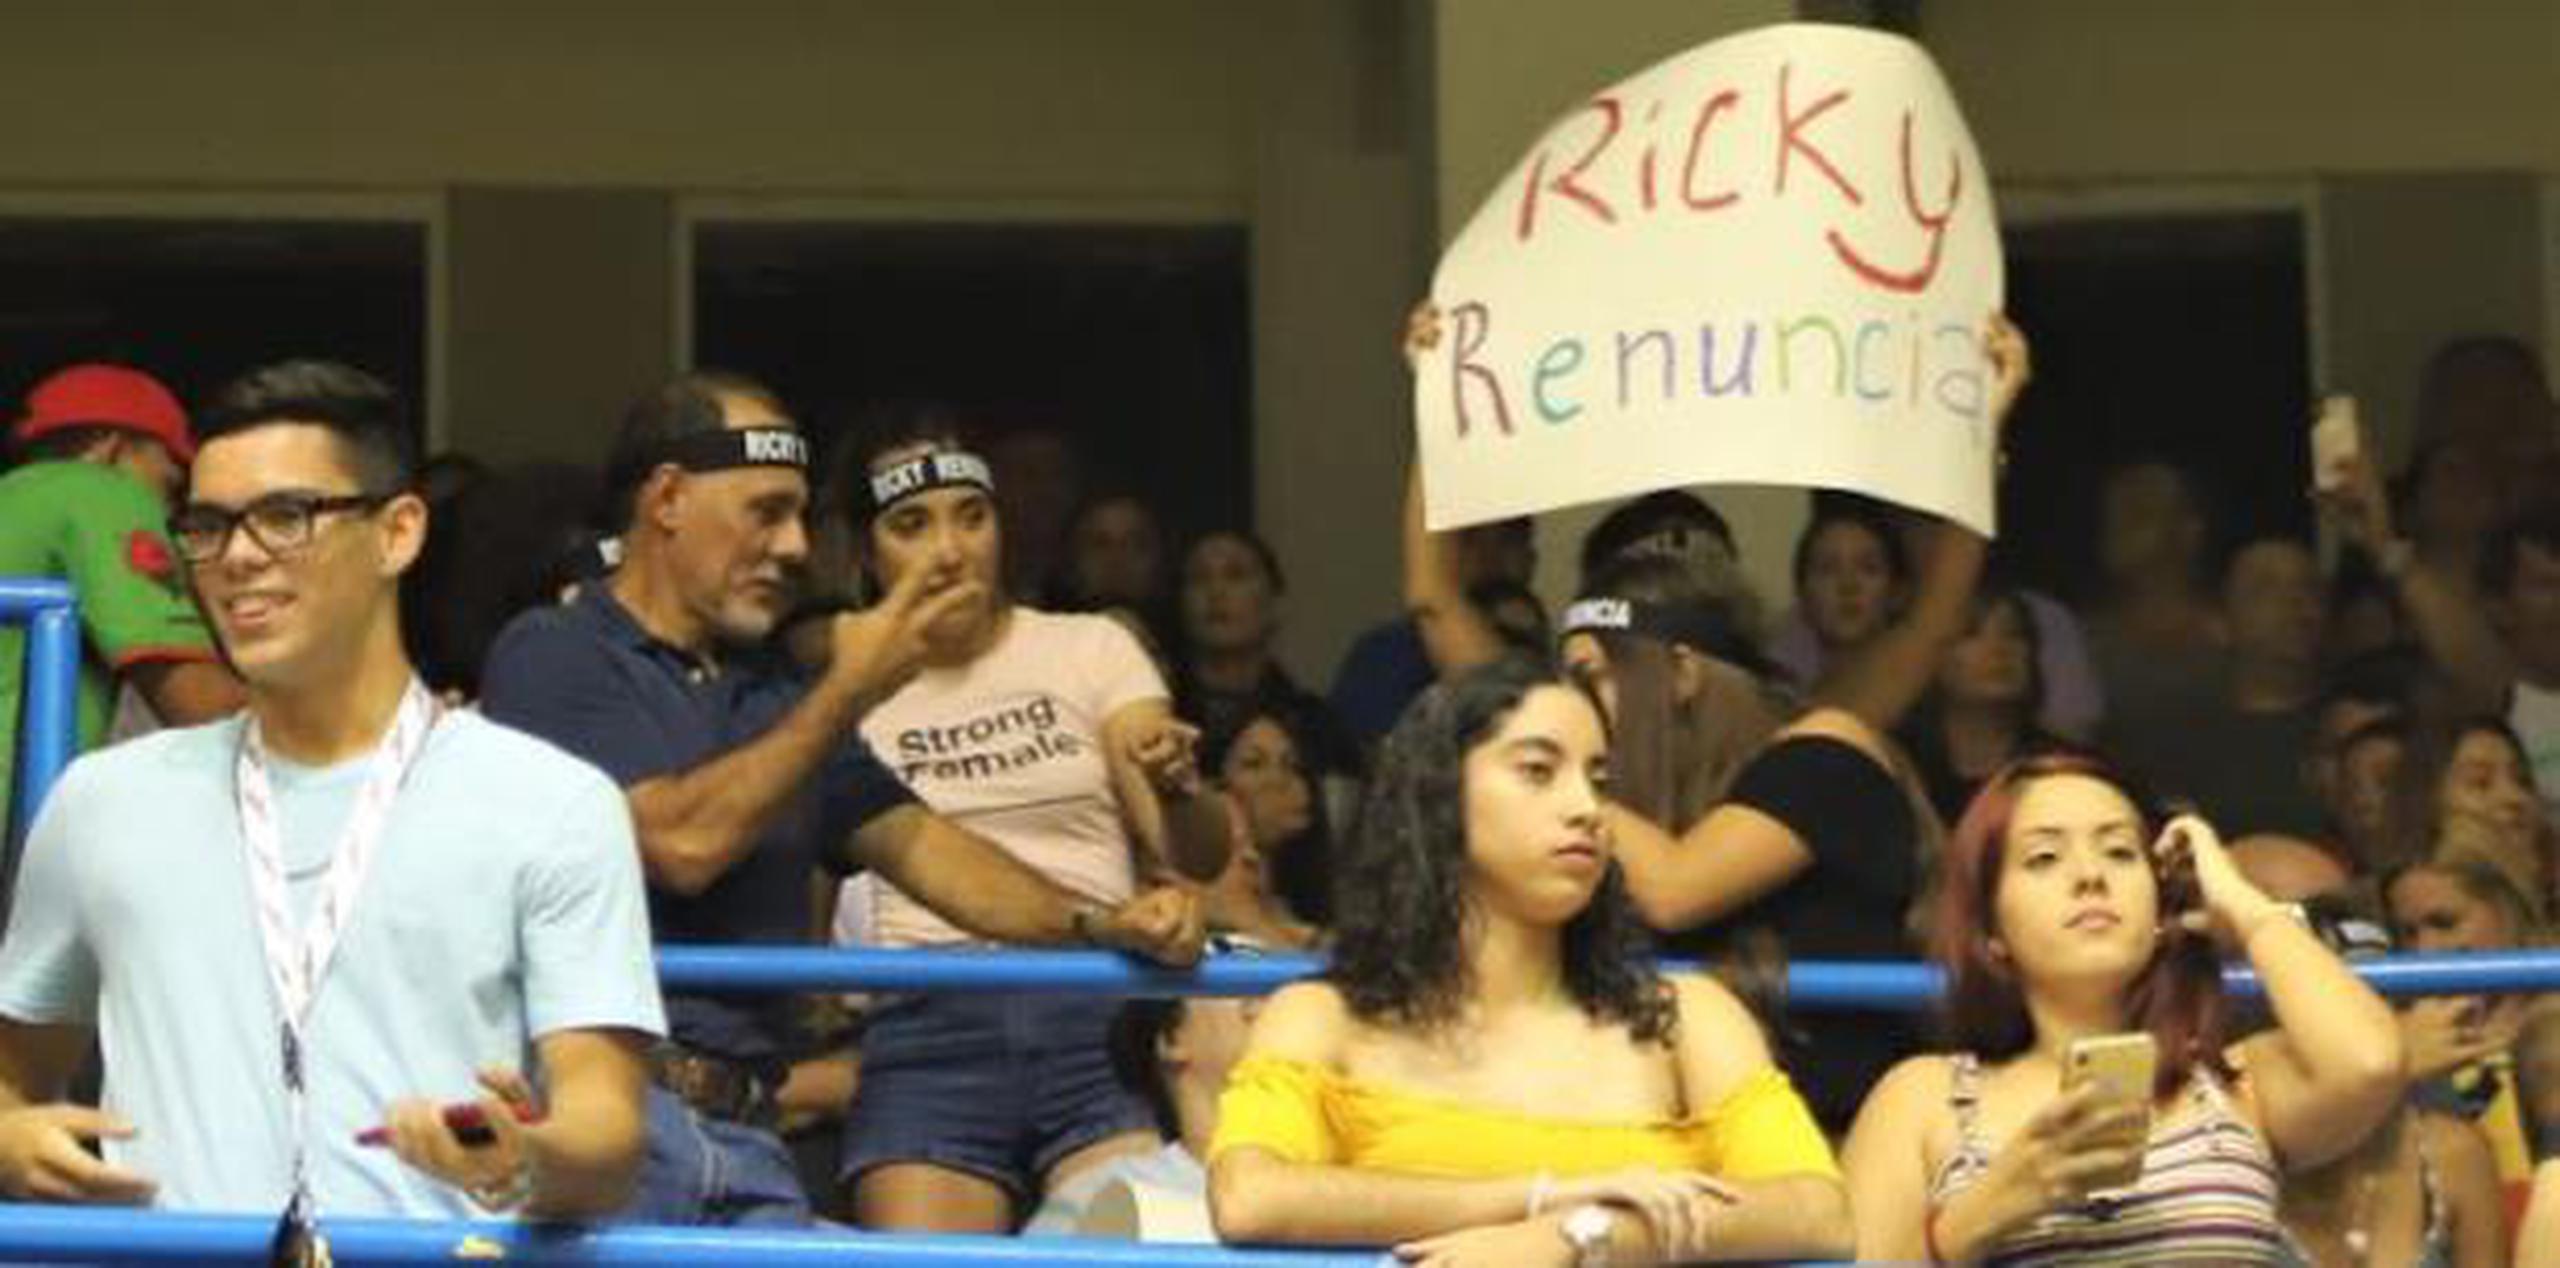 Al igual que el miércoles en Ponce, el público llegó el jueves a la Chavalillo Delgado de Aguada con carteles exigiendo la salida de Ricky Rosselló de la gobernación. (lester.jimenez@gfrmedia.com)